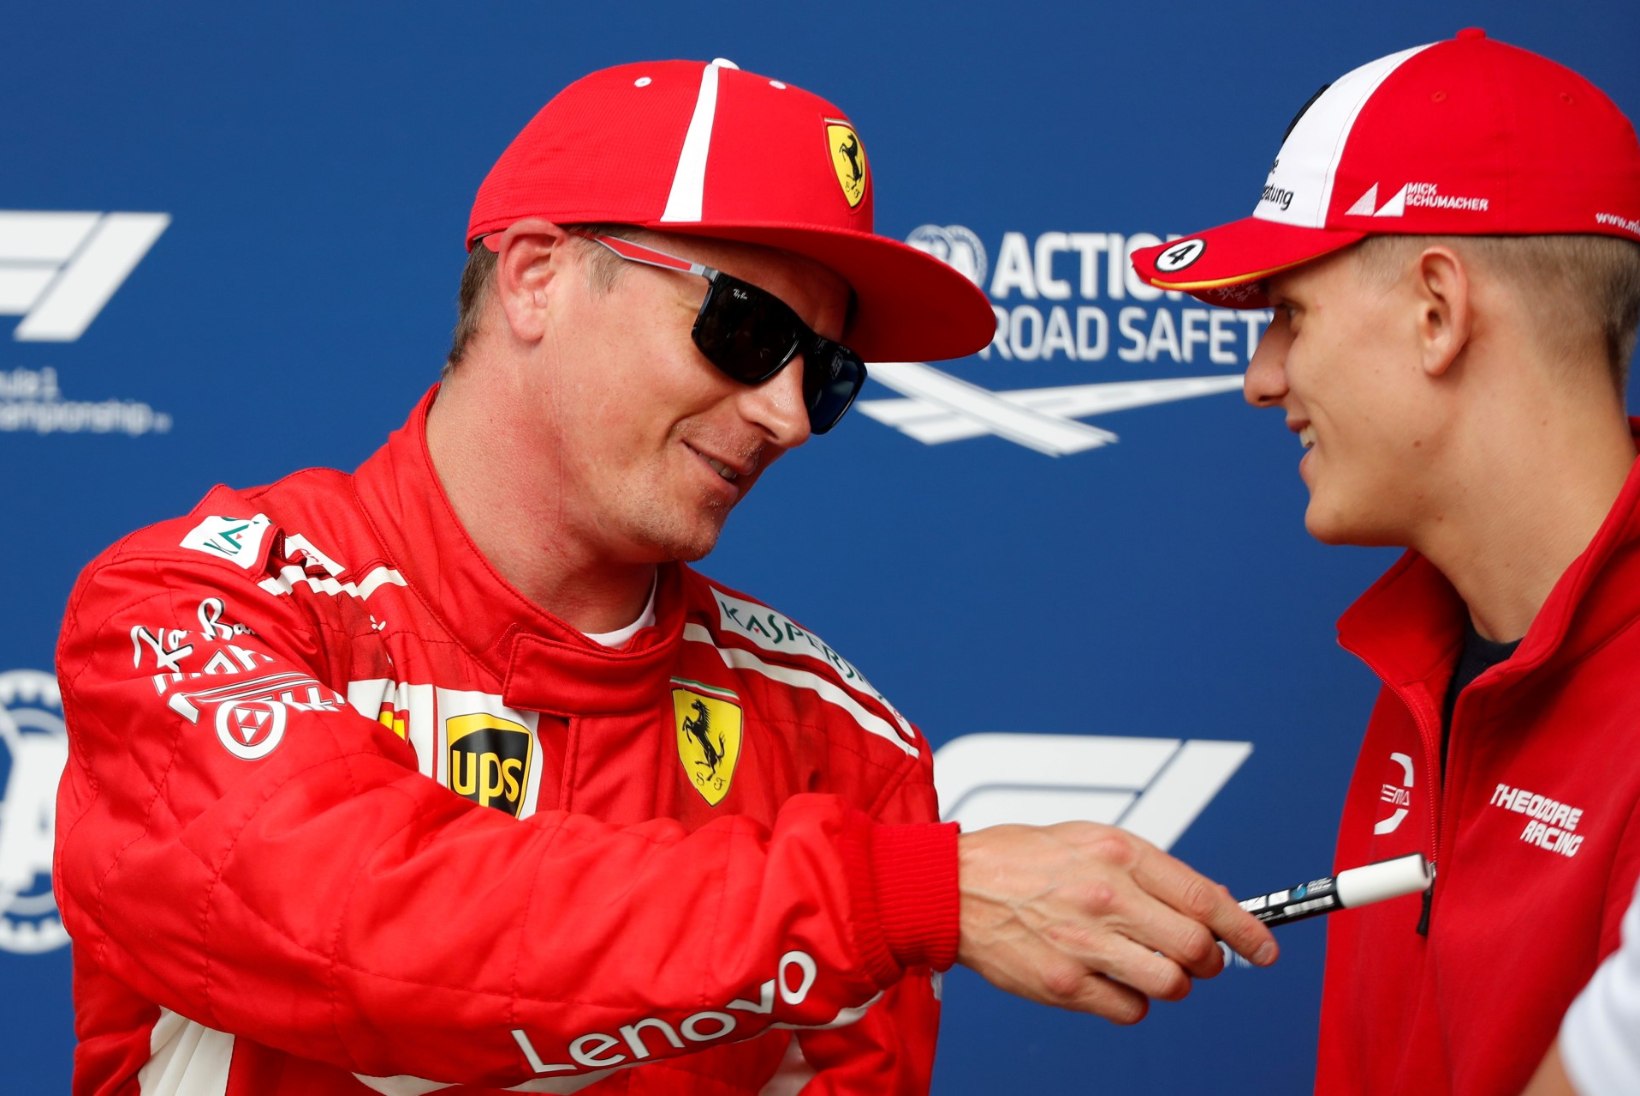 Miks Räikkönen F1 karjääri ei lõpeta? „F1 masinad tekitavad Kimis surinat!“